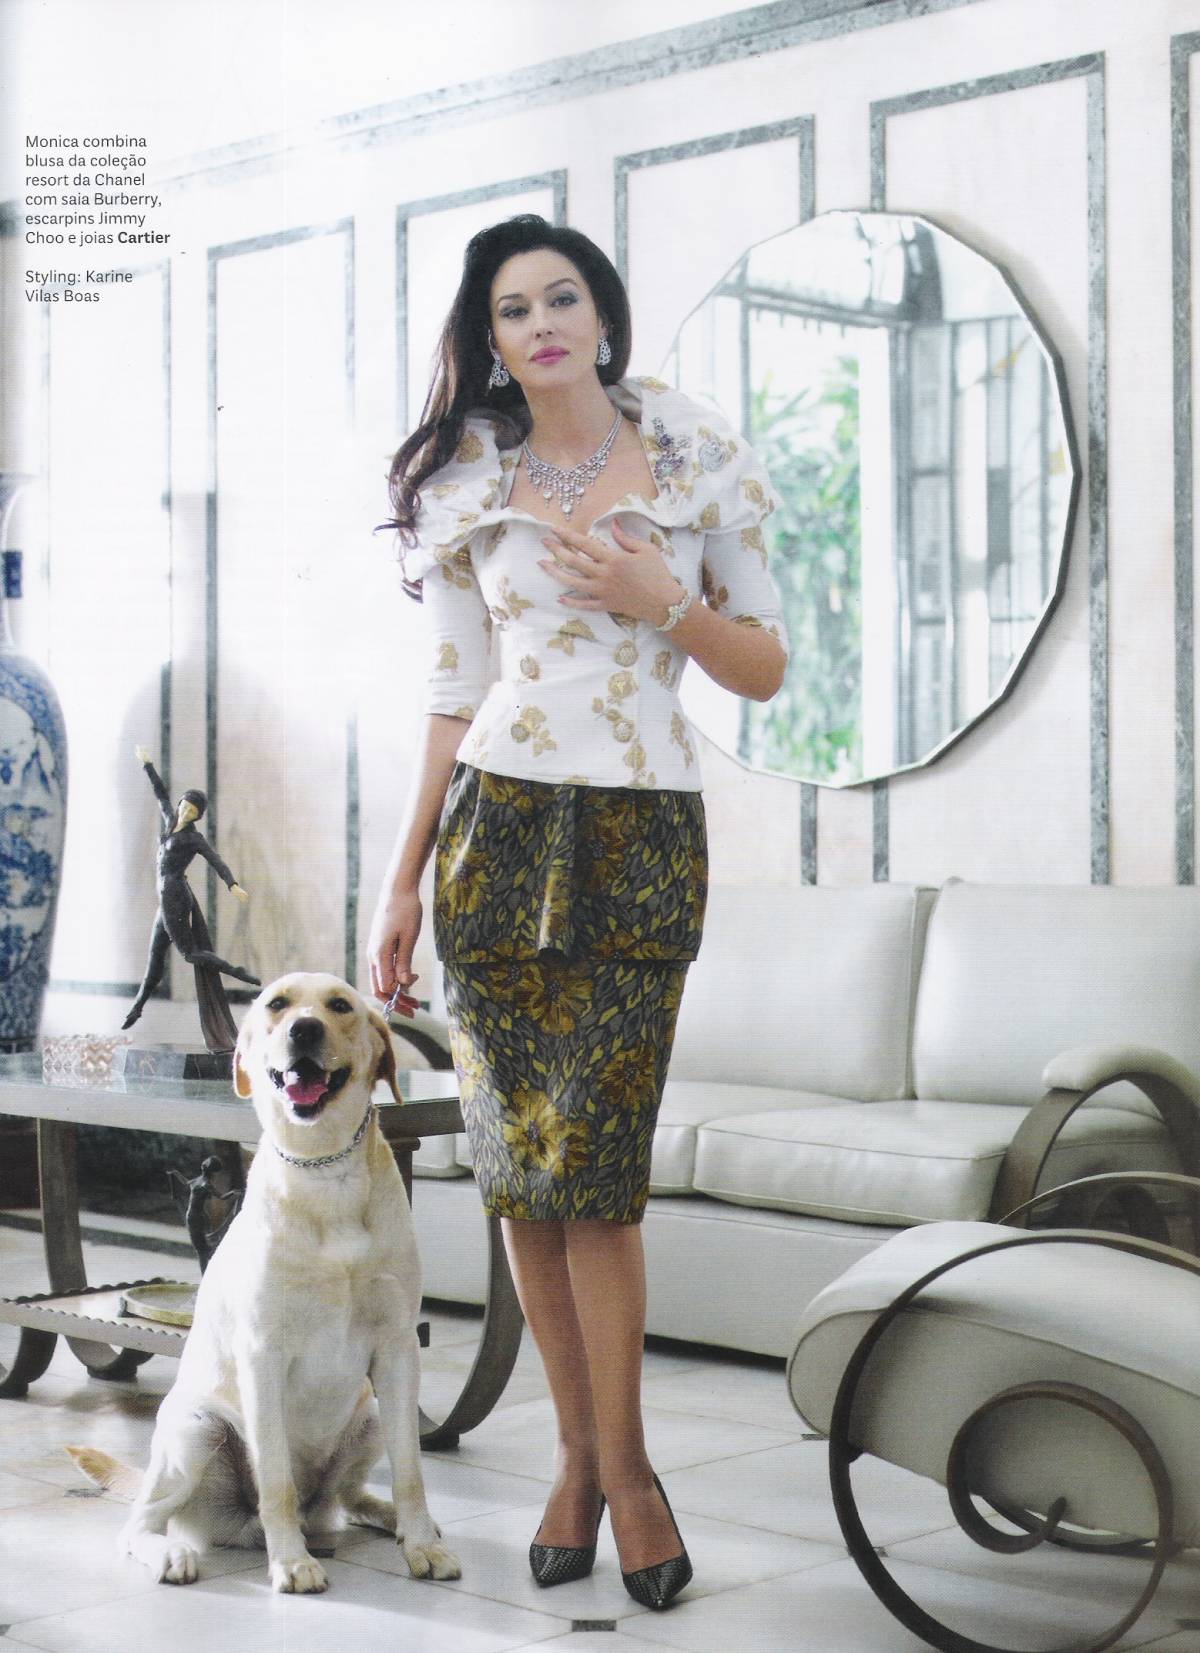 Vogue_Brasil_Janeiro2013_Monica_Bellucci_ph_JRDuran (1)